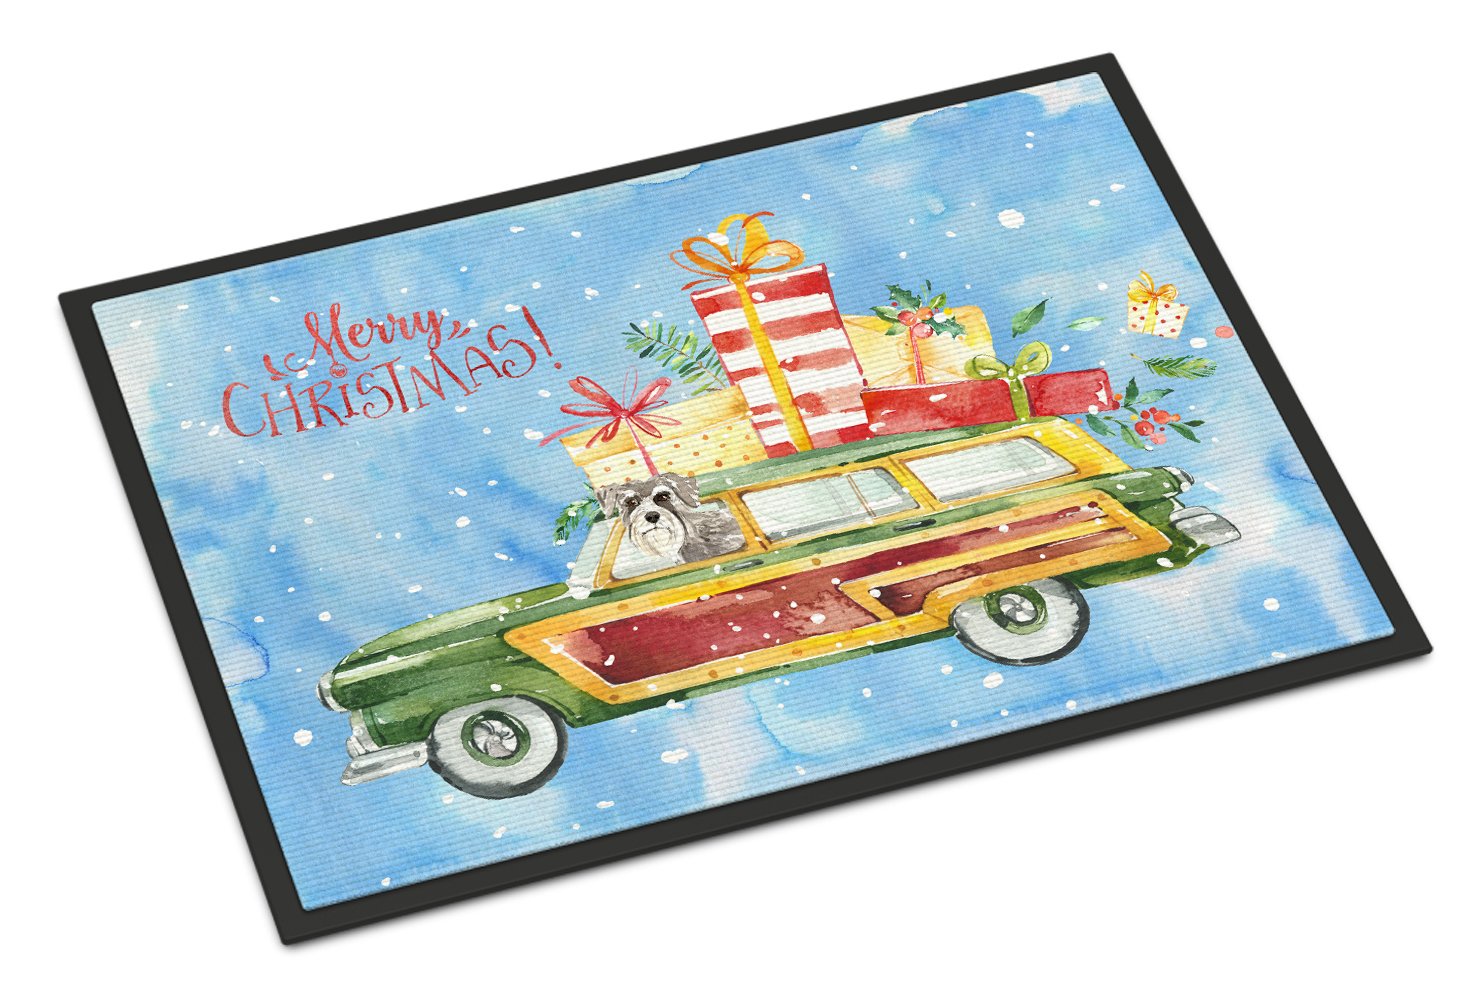 Merry Christmas Schnauzer #2 Indoor or Outdoor Mat 24x36 CK2419JMAT by Caroline's Treasures